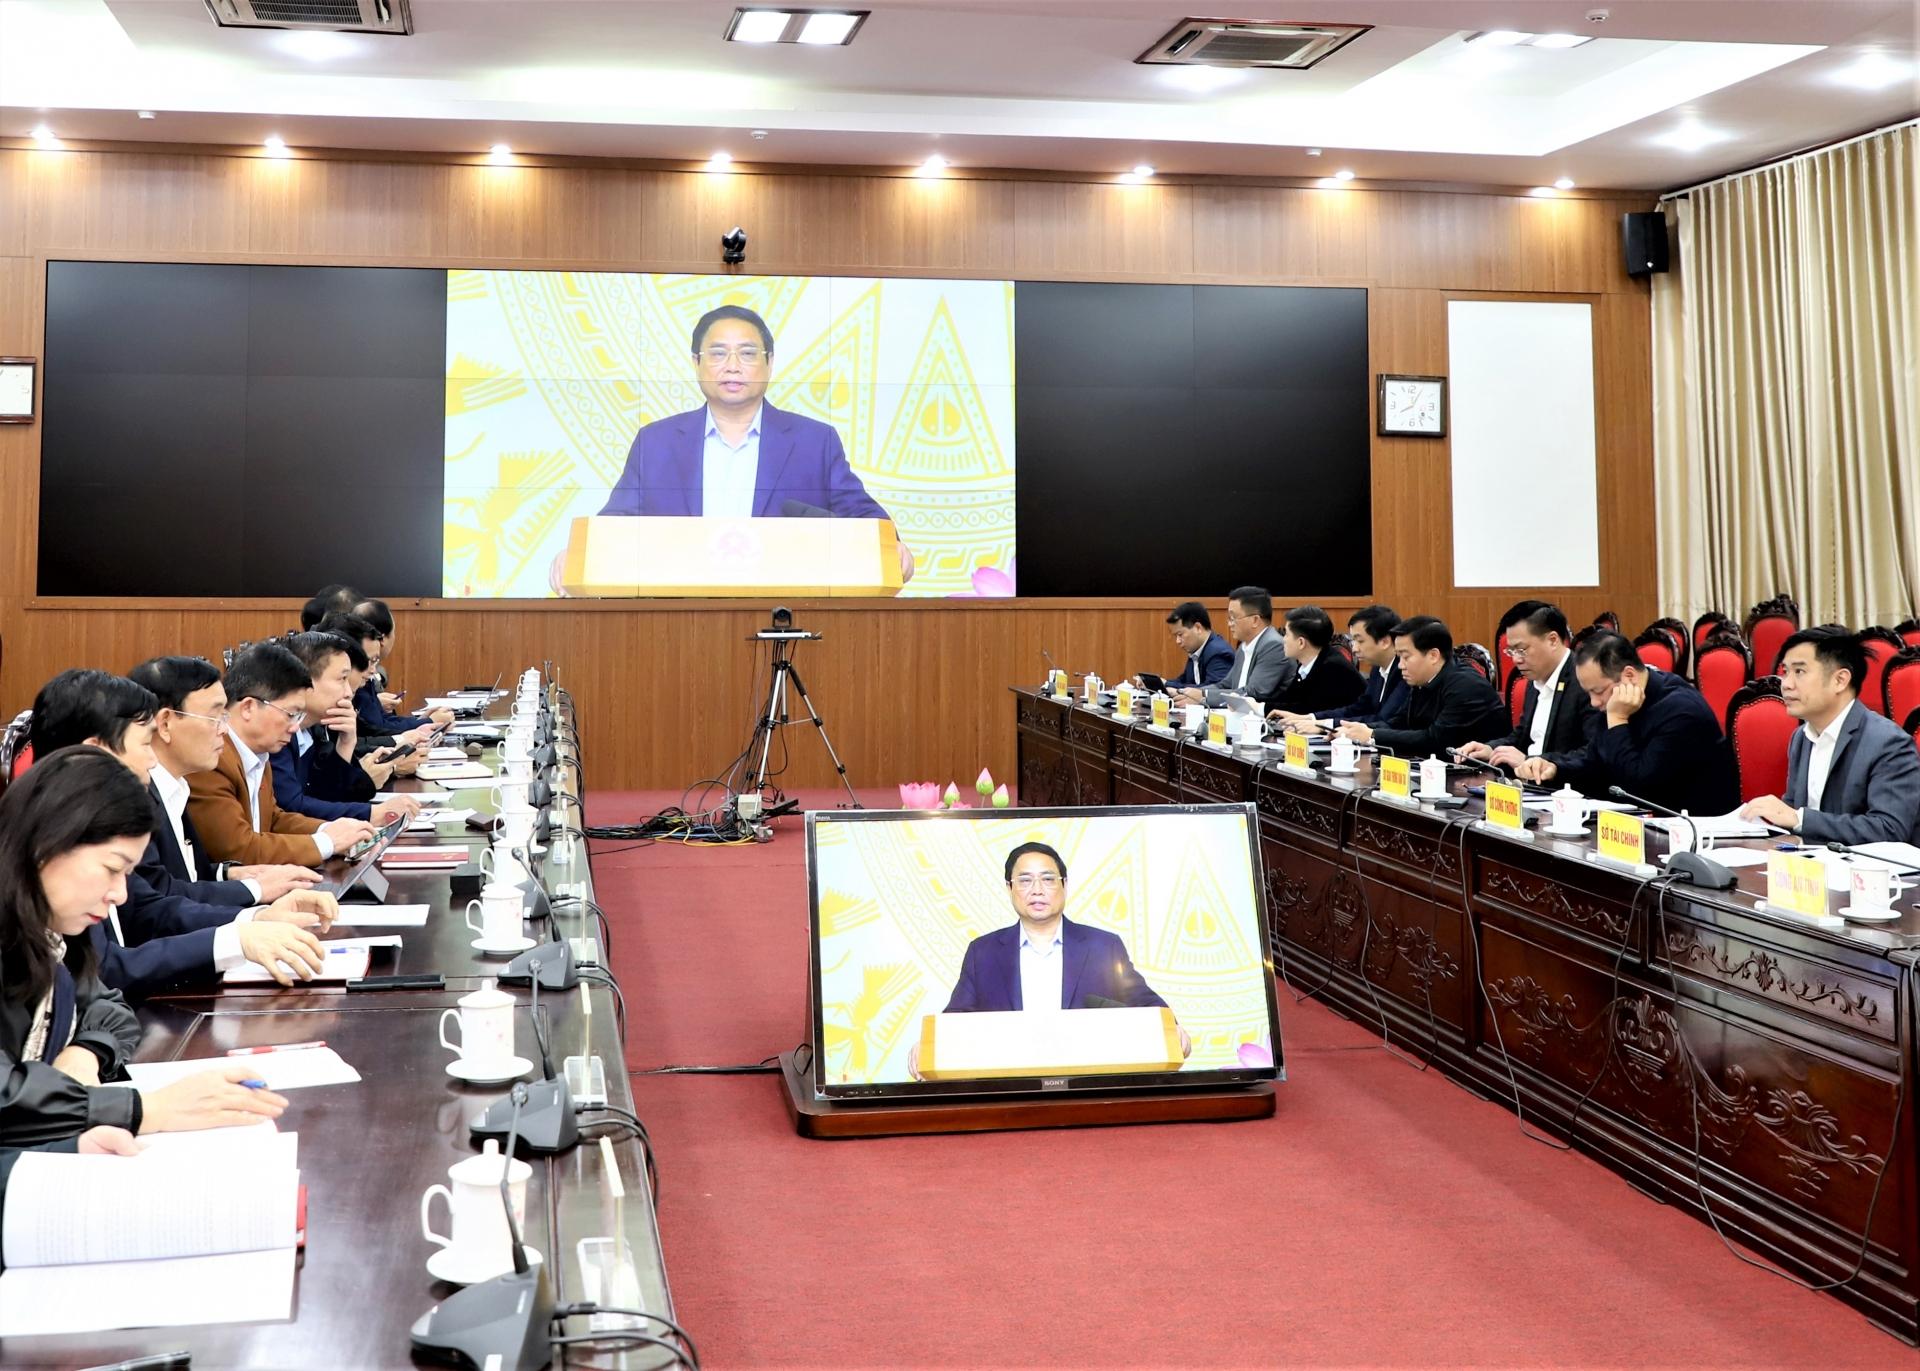 Các đại biểu tại điểm cầu của tỉnh nghe ý kiến phát biểu của Thủ tướng Chính phủ Phạm Minh Chính.